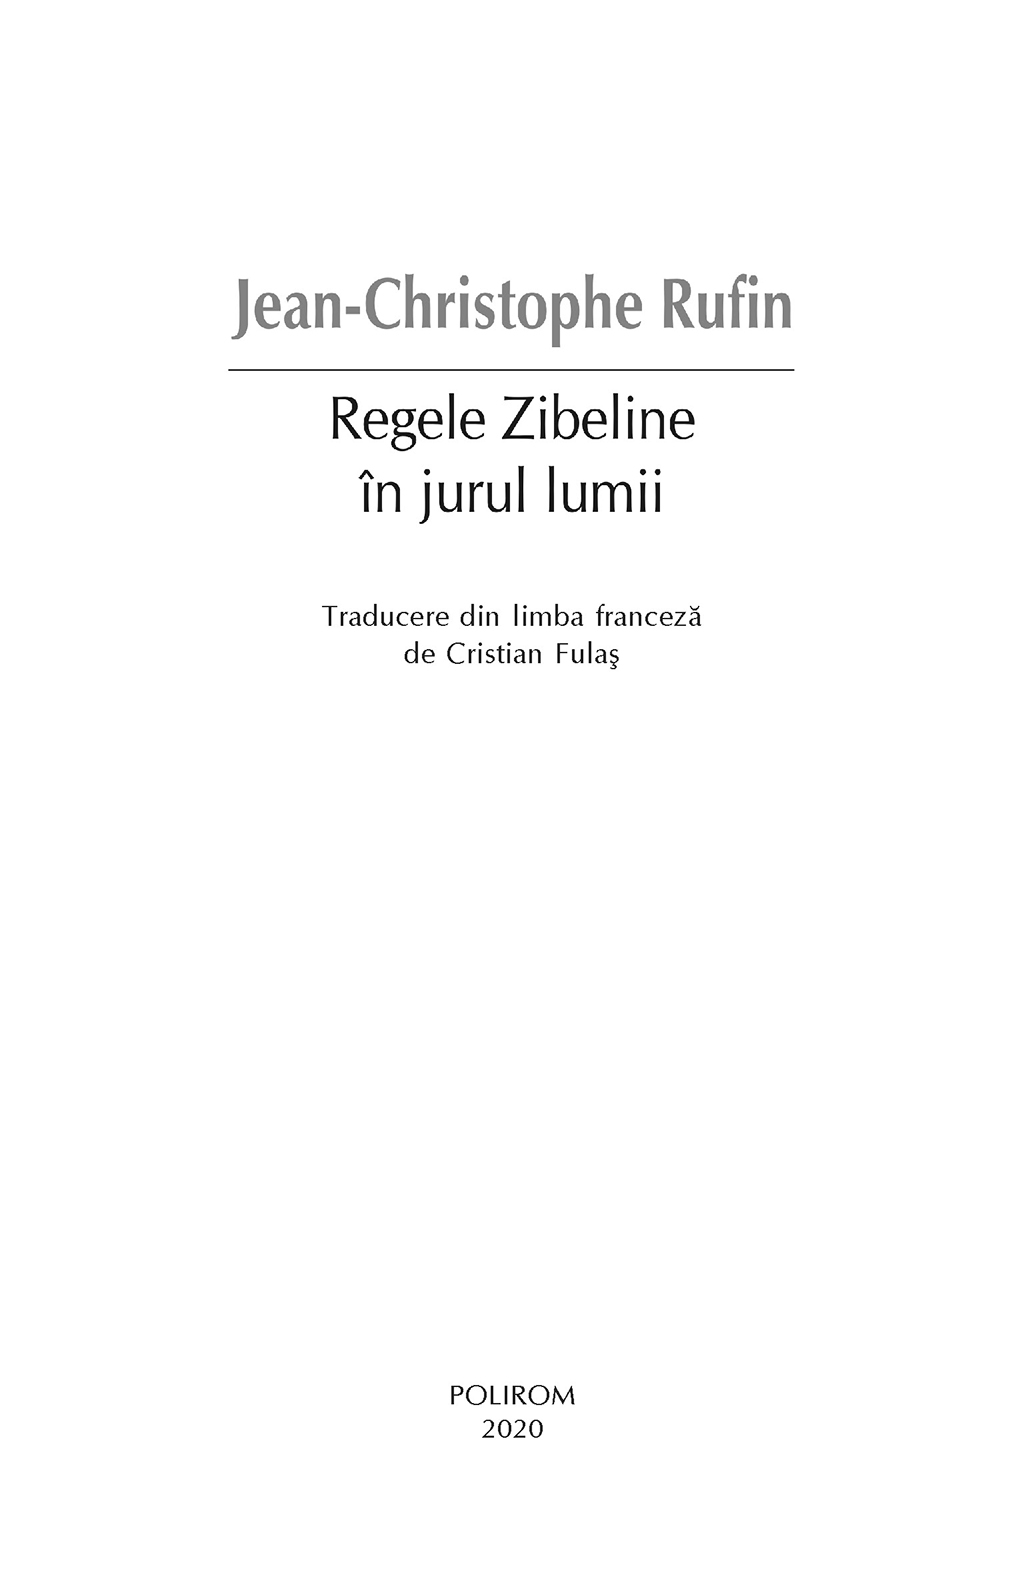 Regele Zibeline in jurul lumii | Jean-Christophe Rufin - 2